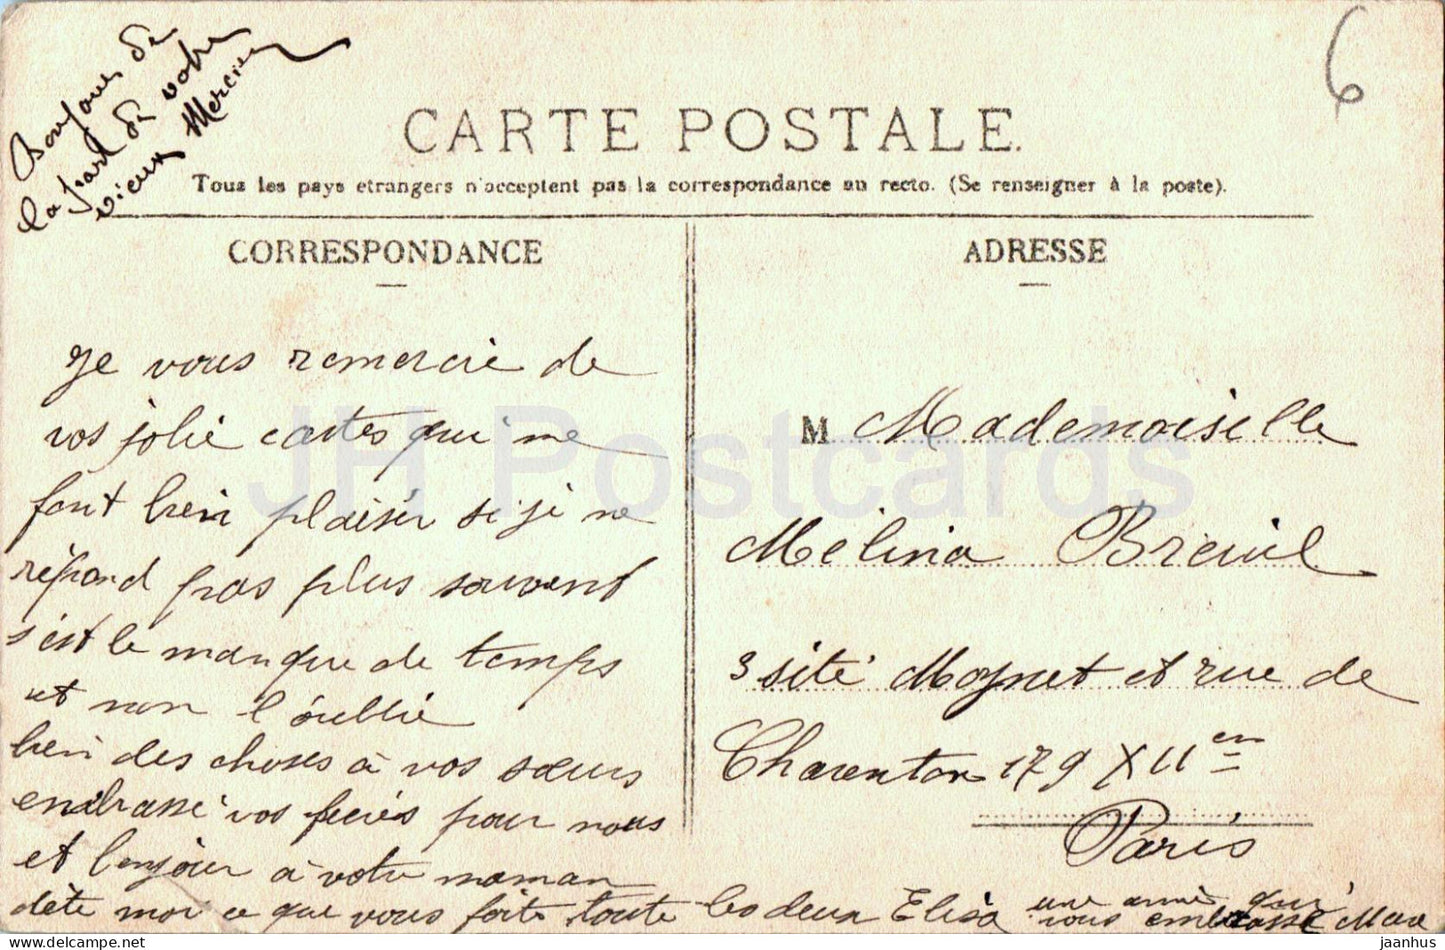 D'Orleans - Je vous envoie ces Fleurs - alte Postkarte - 1906 - Frankreich - gebraucht 